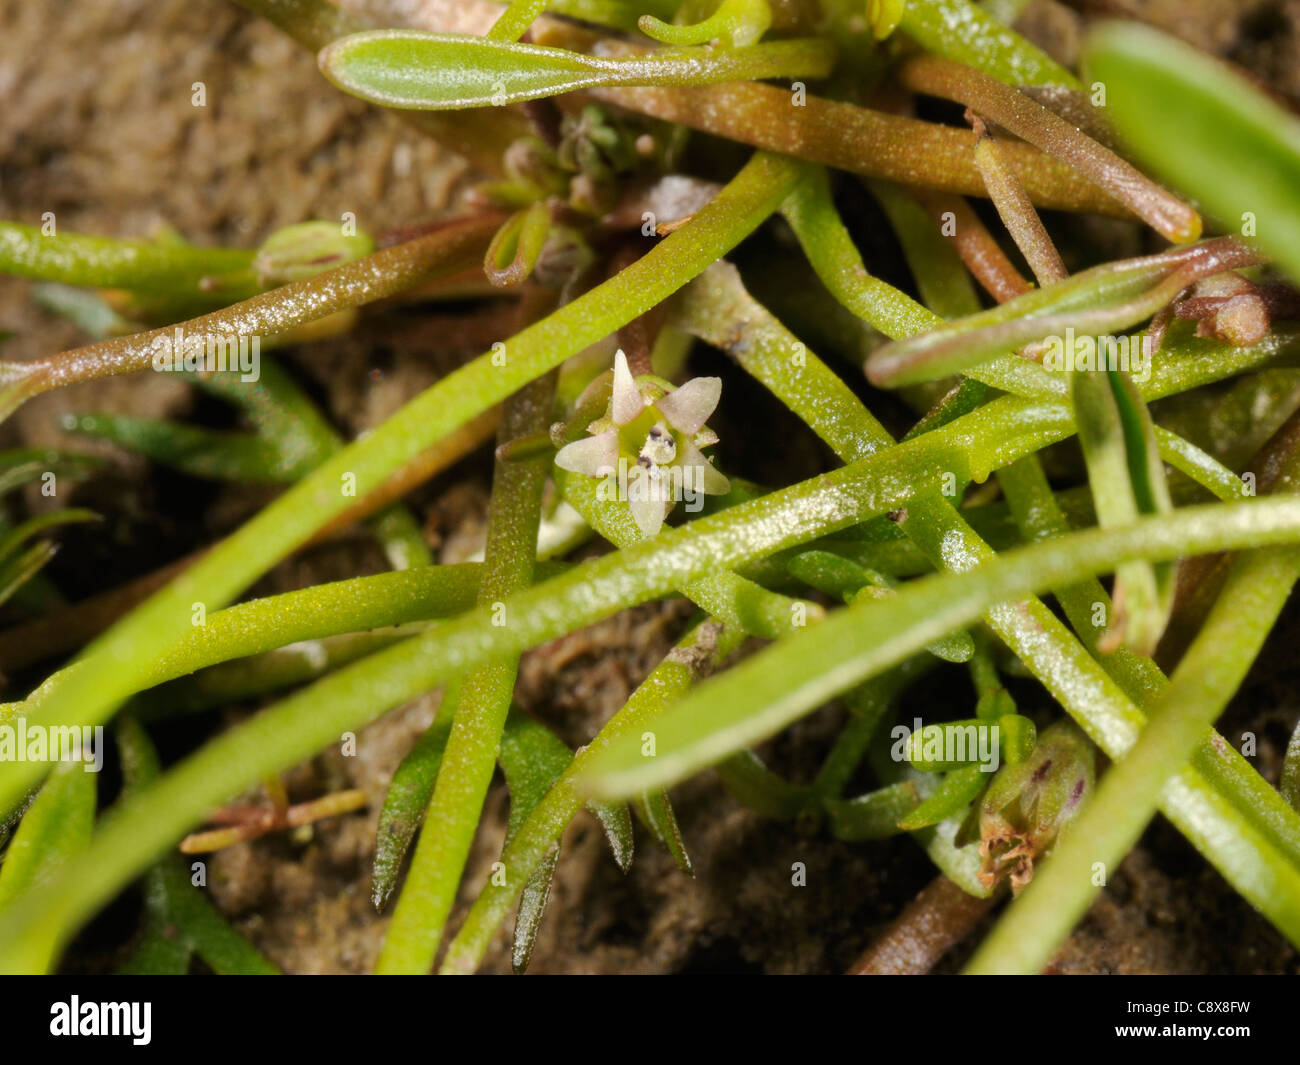 Mudwort, Limosella aquatica Stock Photo